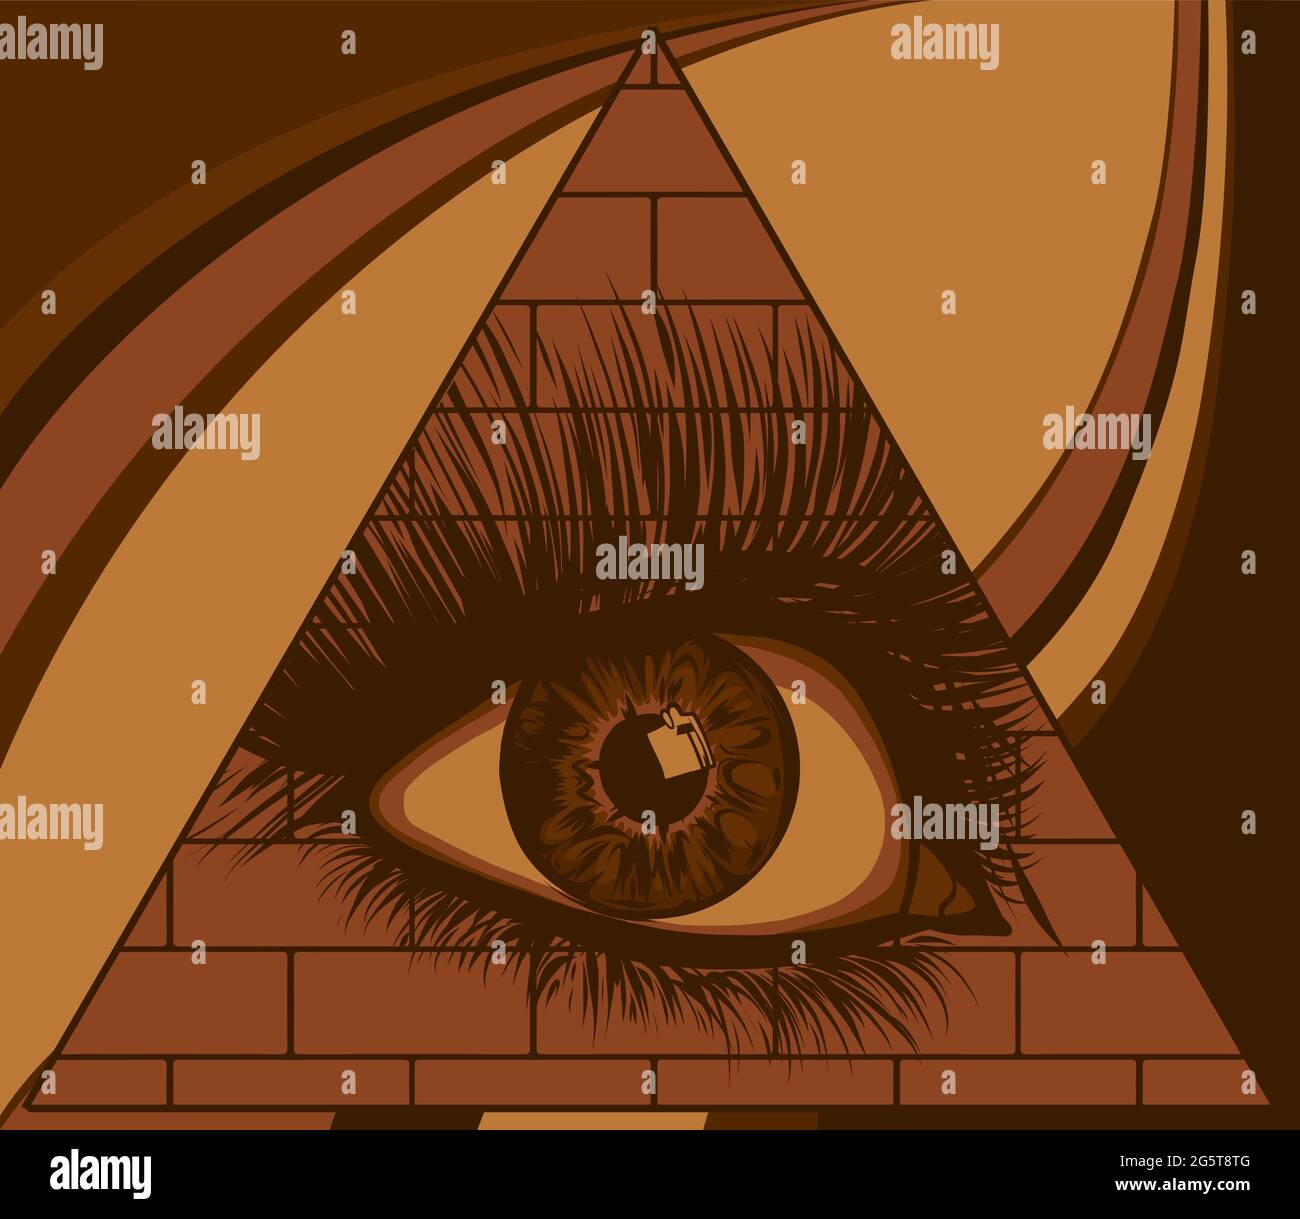 Occhio della provvidenza. Tutti gli occhi di vista nel triangolo in cima al simbolo masonic piramidale. Illustrazione Vettoriale